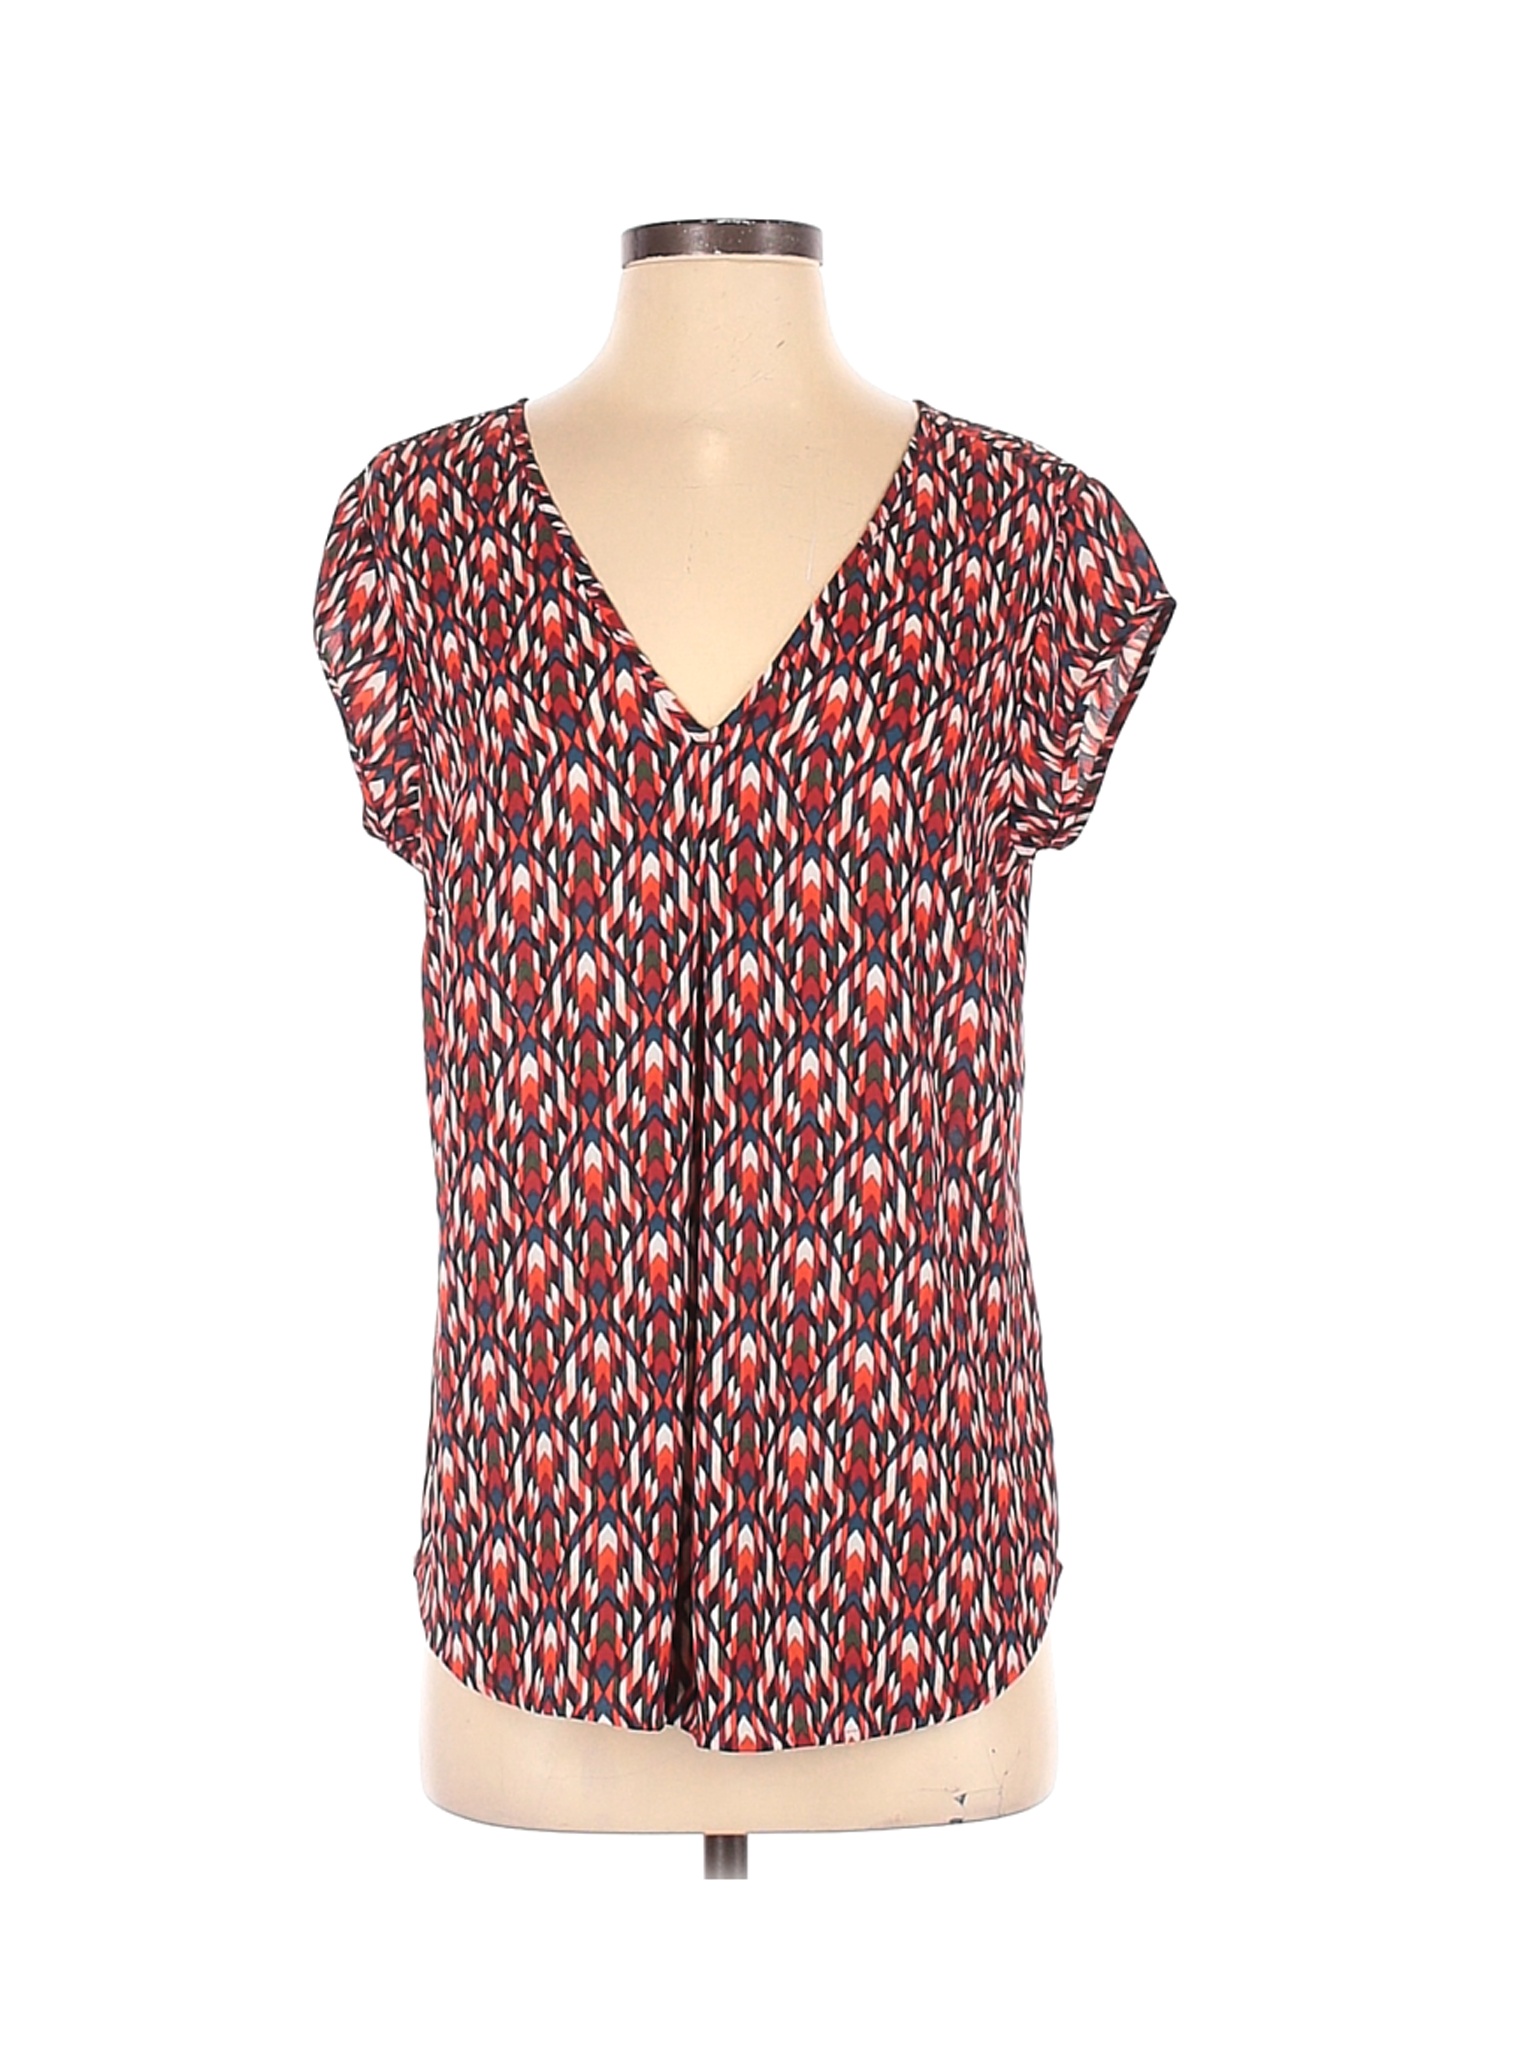 DR2 Women Red Short Sleeve Blouse S | eBay